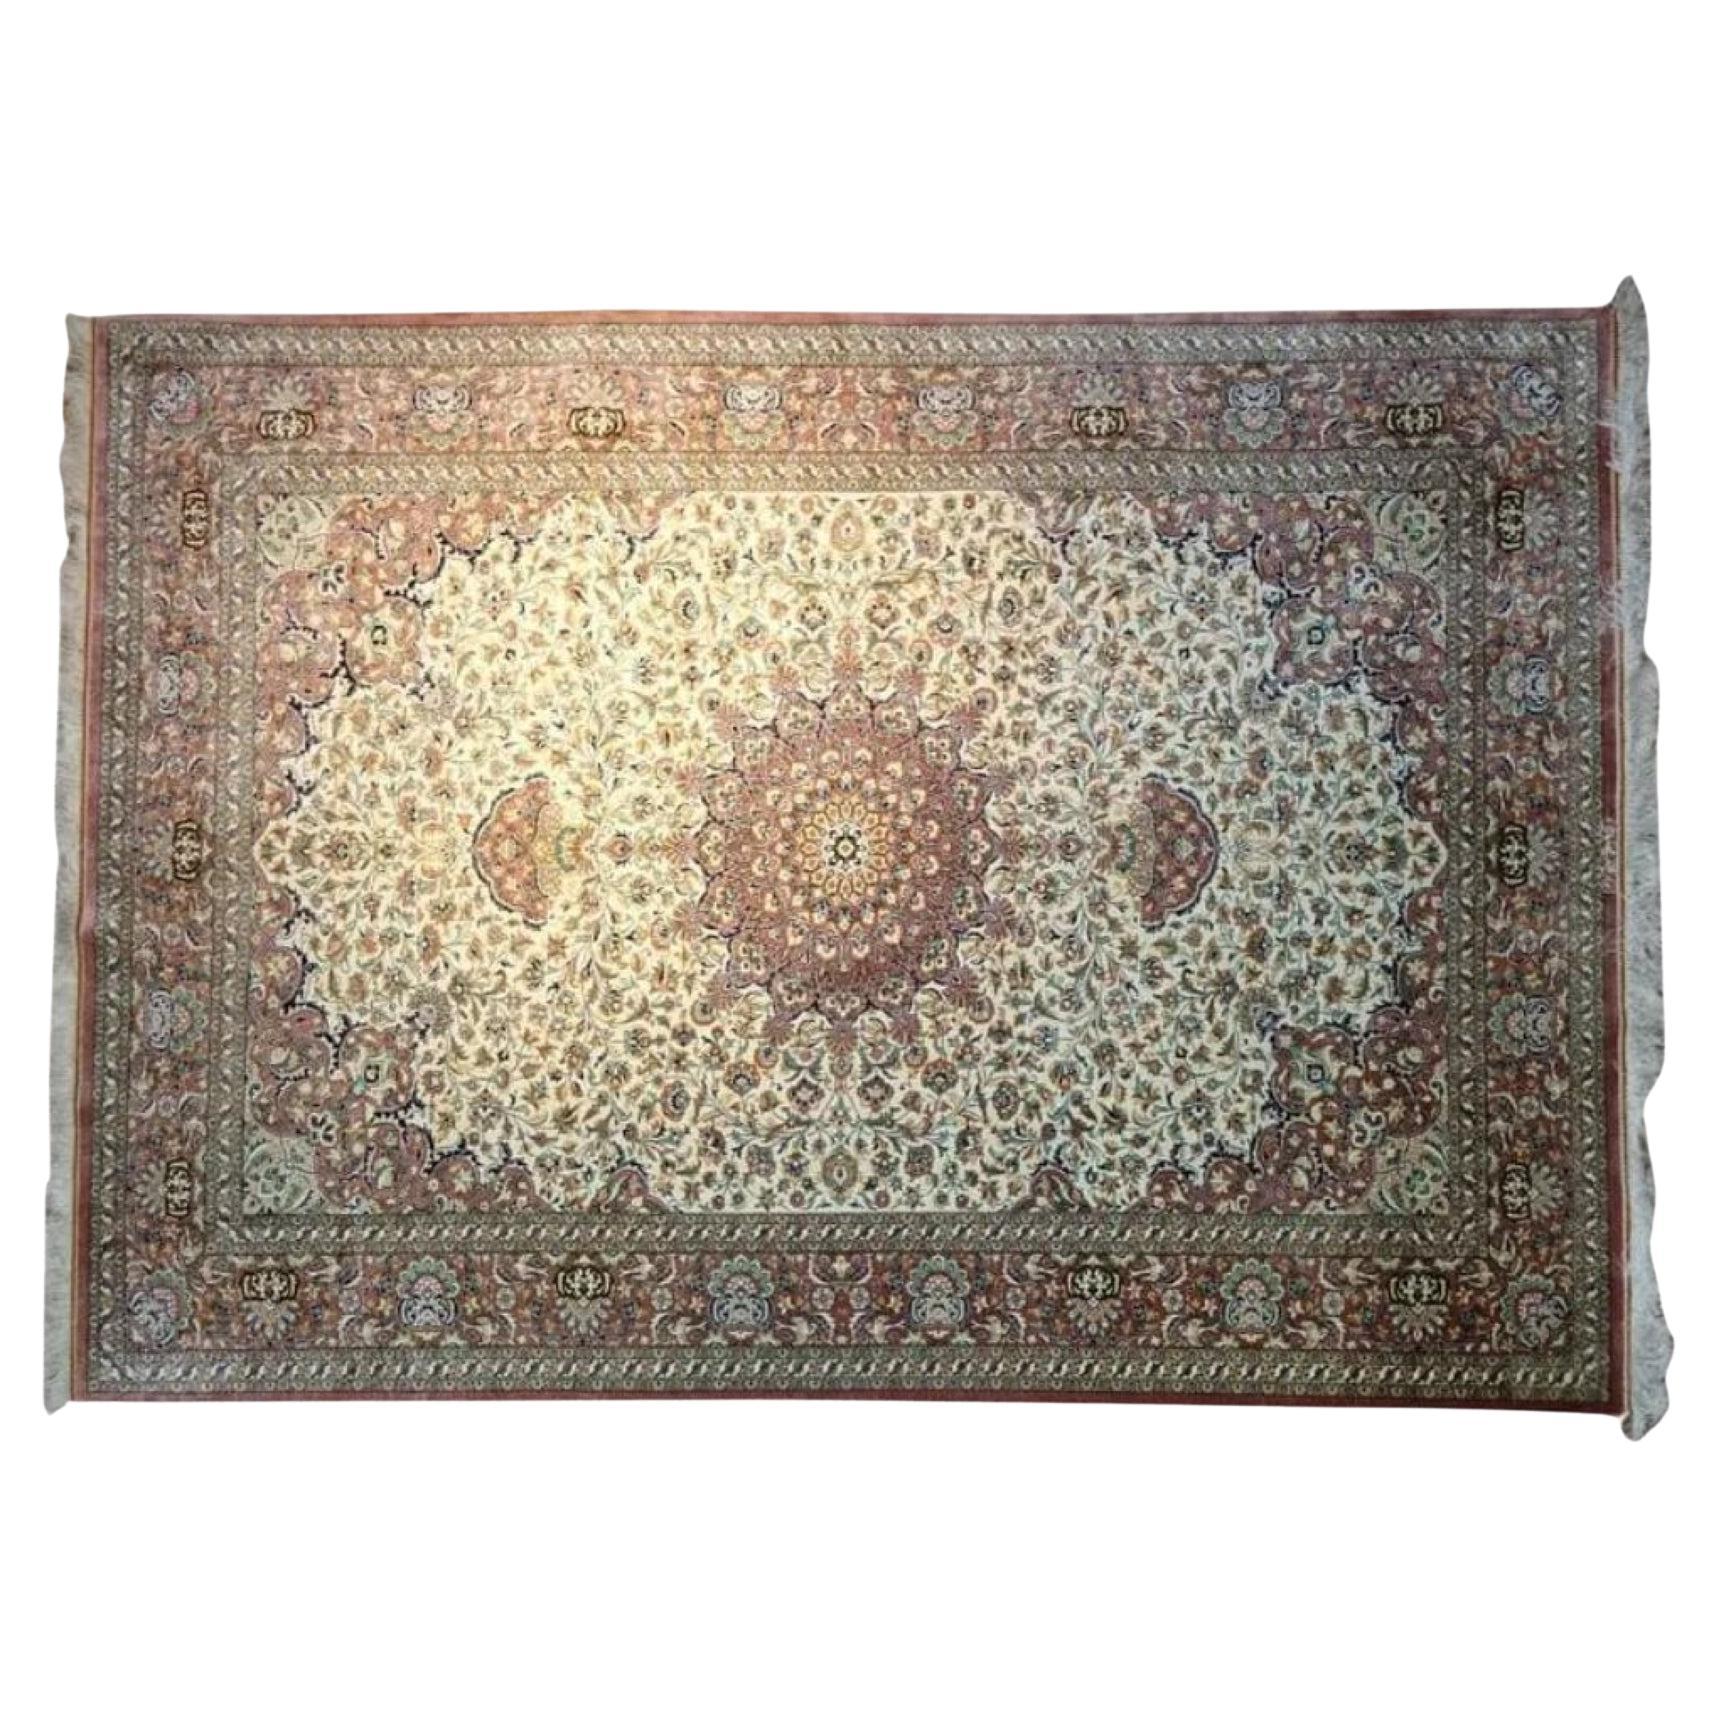 Très beau tapis persan en soie Ghom - 7.1' x 5.2'.